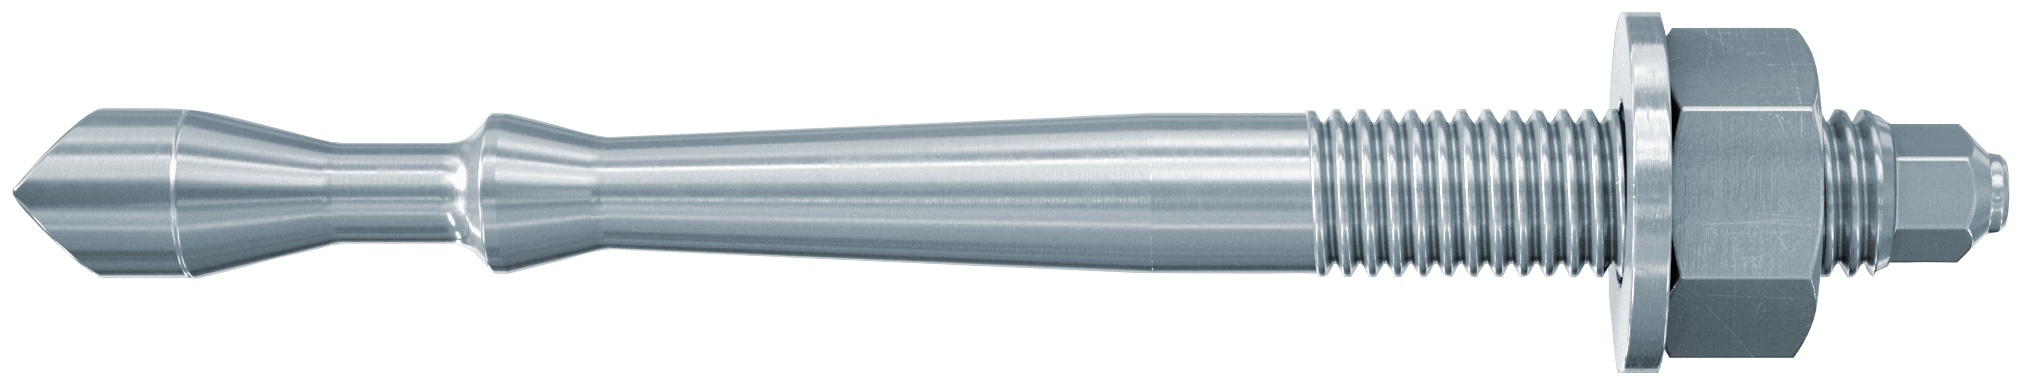 fischer Barra multicono in acciaio FHB II-A S M16x95/30 per ancorante chimico FIS HB (1 Pz.) Barra multicono corta in acciaio zincato classe 8.8. Massime prestazioni a trazione in calcestruzzo fessurato e a ridotte distanze dai bordi..